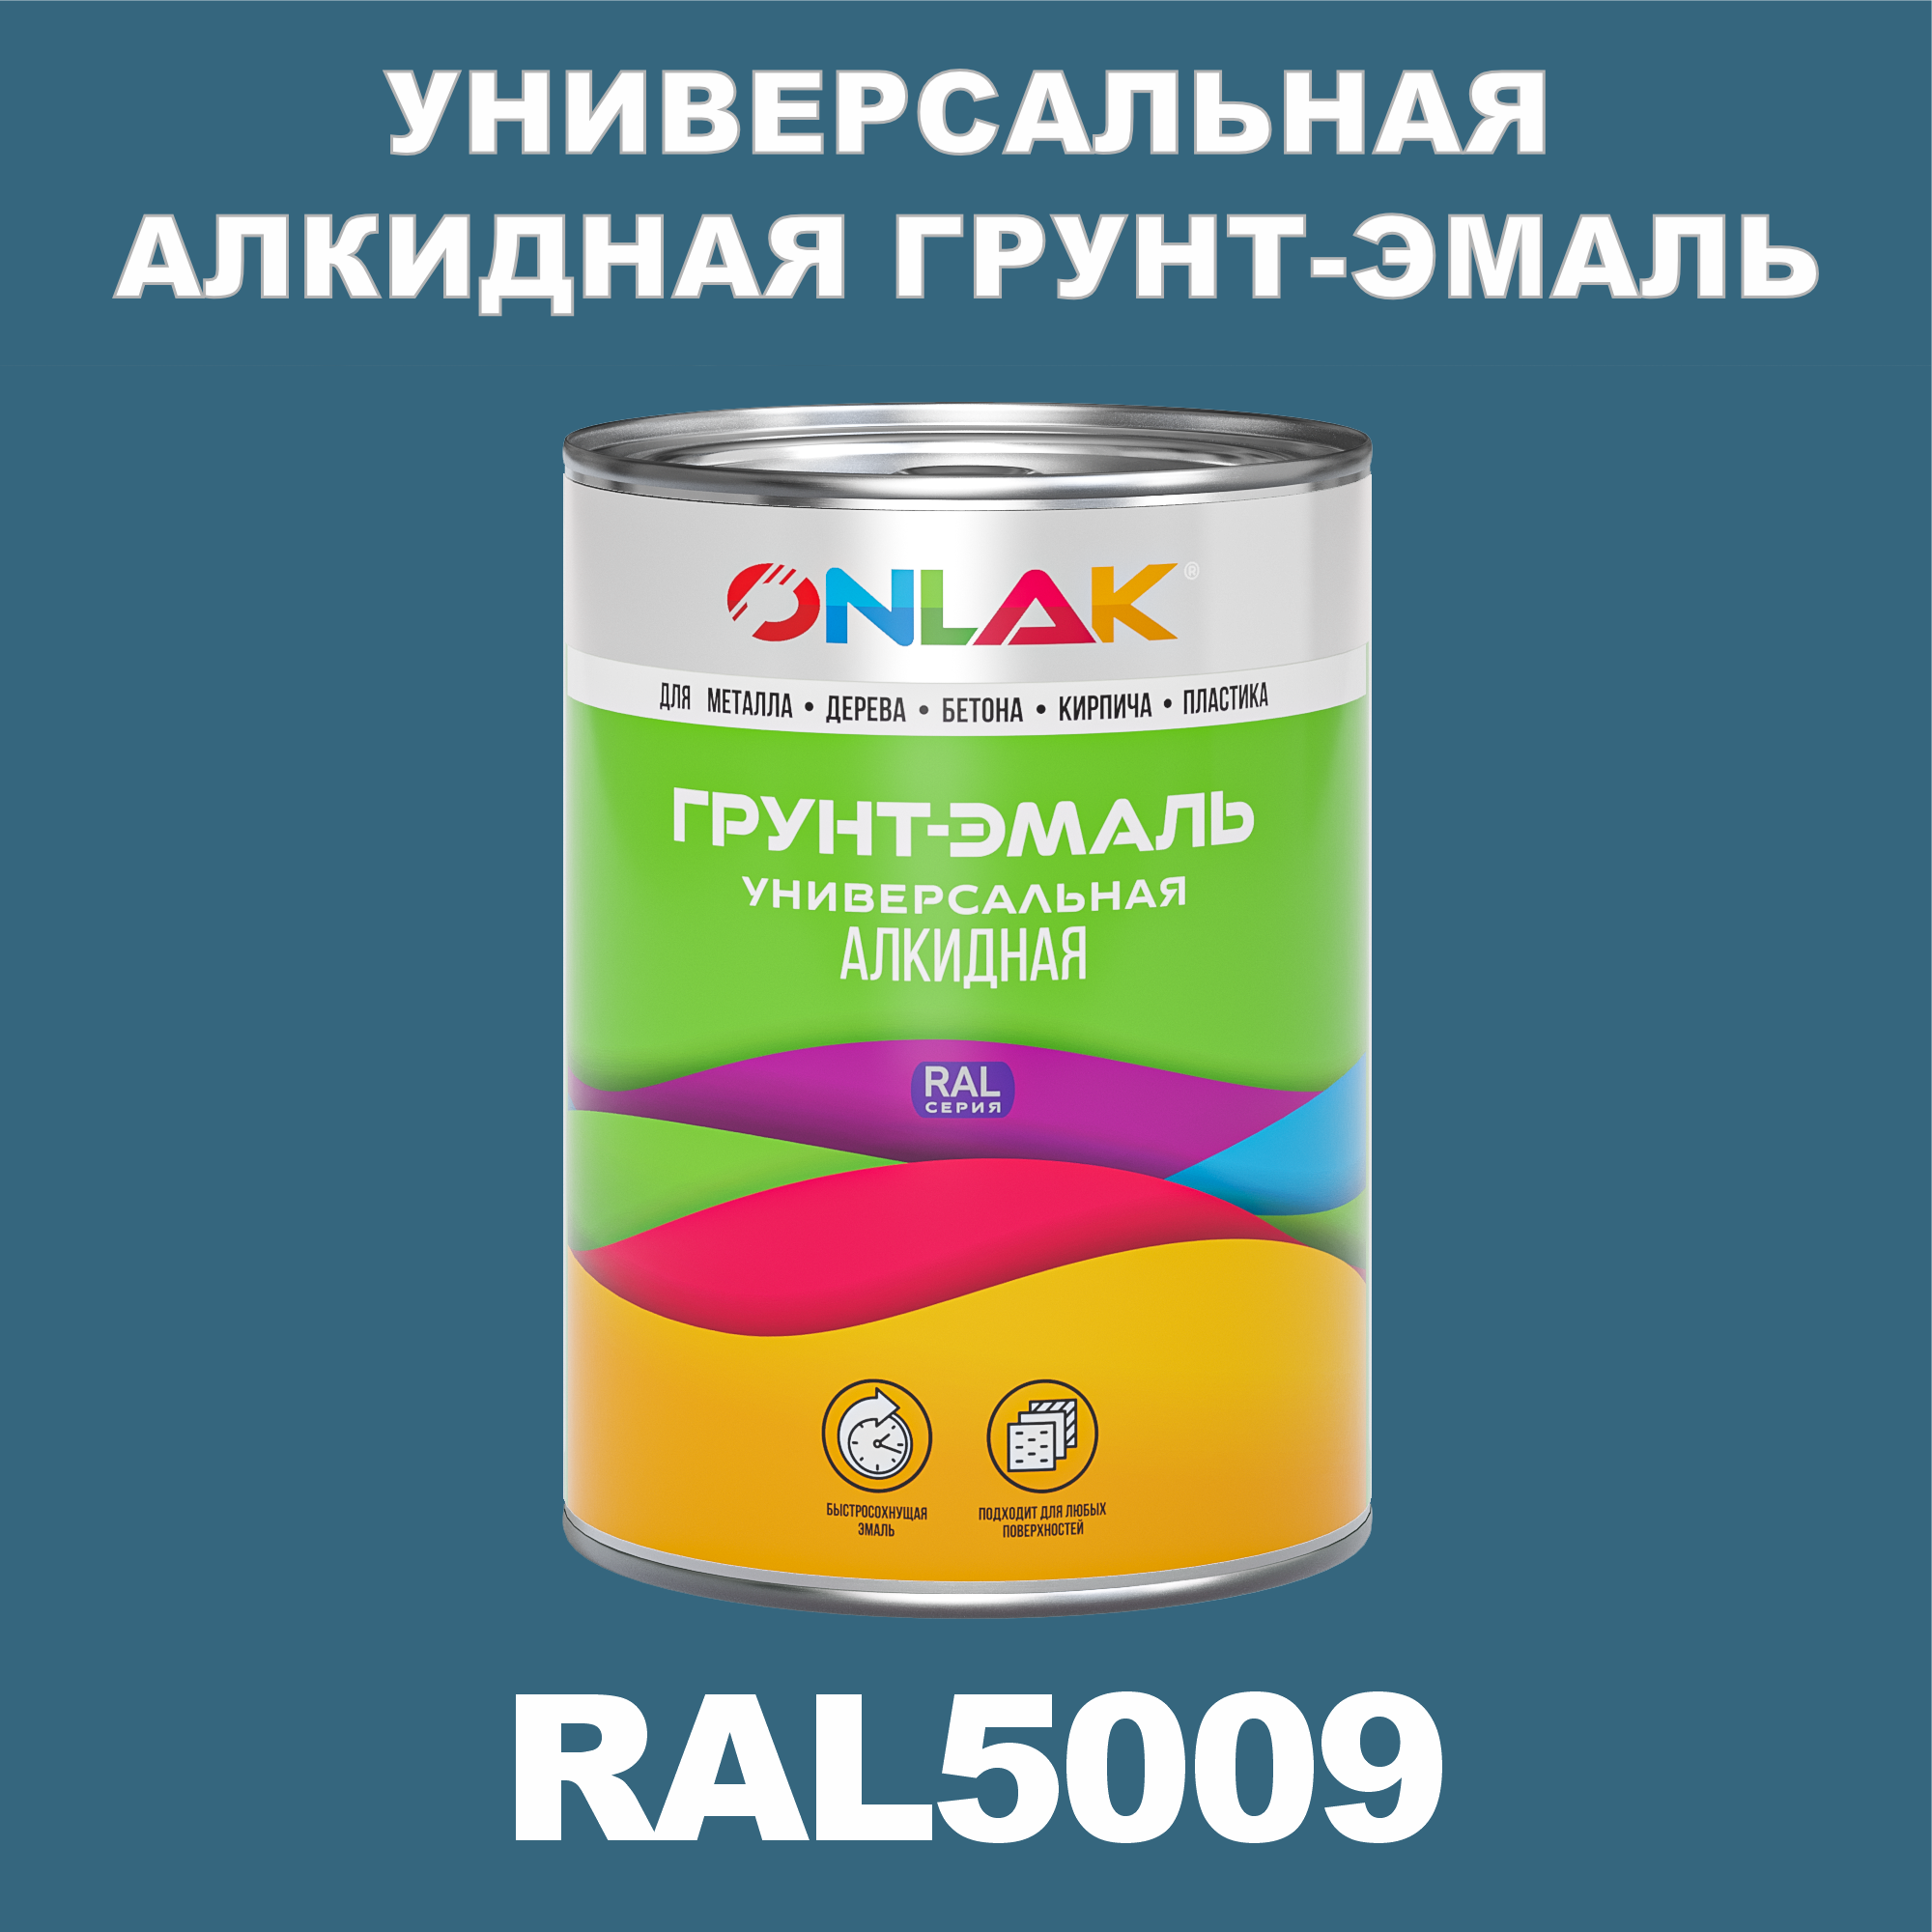 Грунт-эмаль ONLAK 1К RAL5009 антикоррозионная алкидная по металлу по ржавчине 1 кг грунт эмаль yollo по ржавчине алкидная синяя 0 9 кг